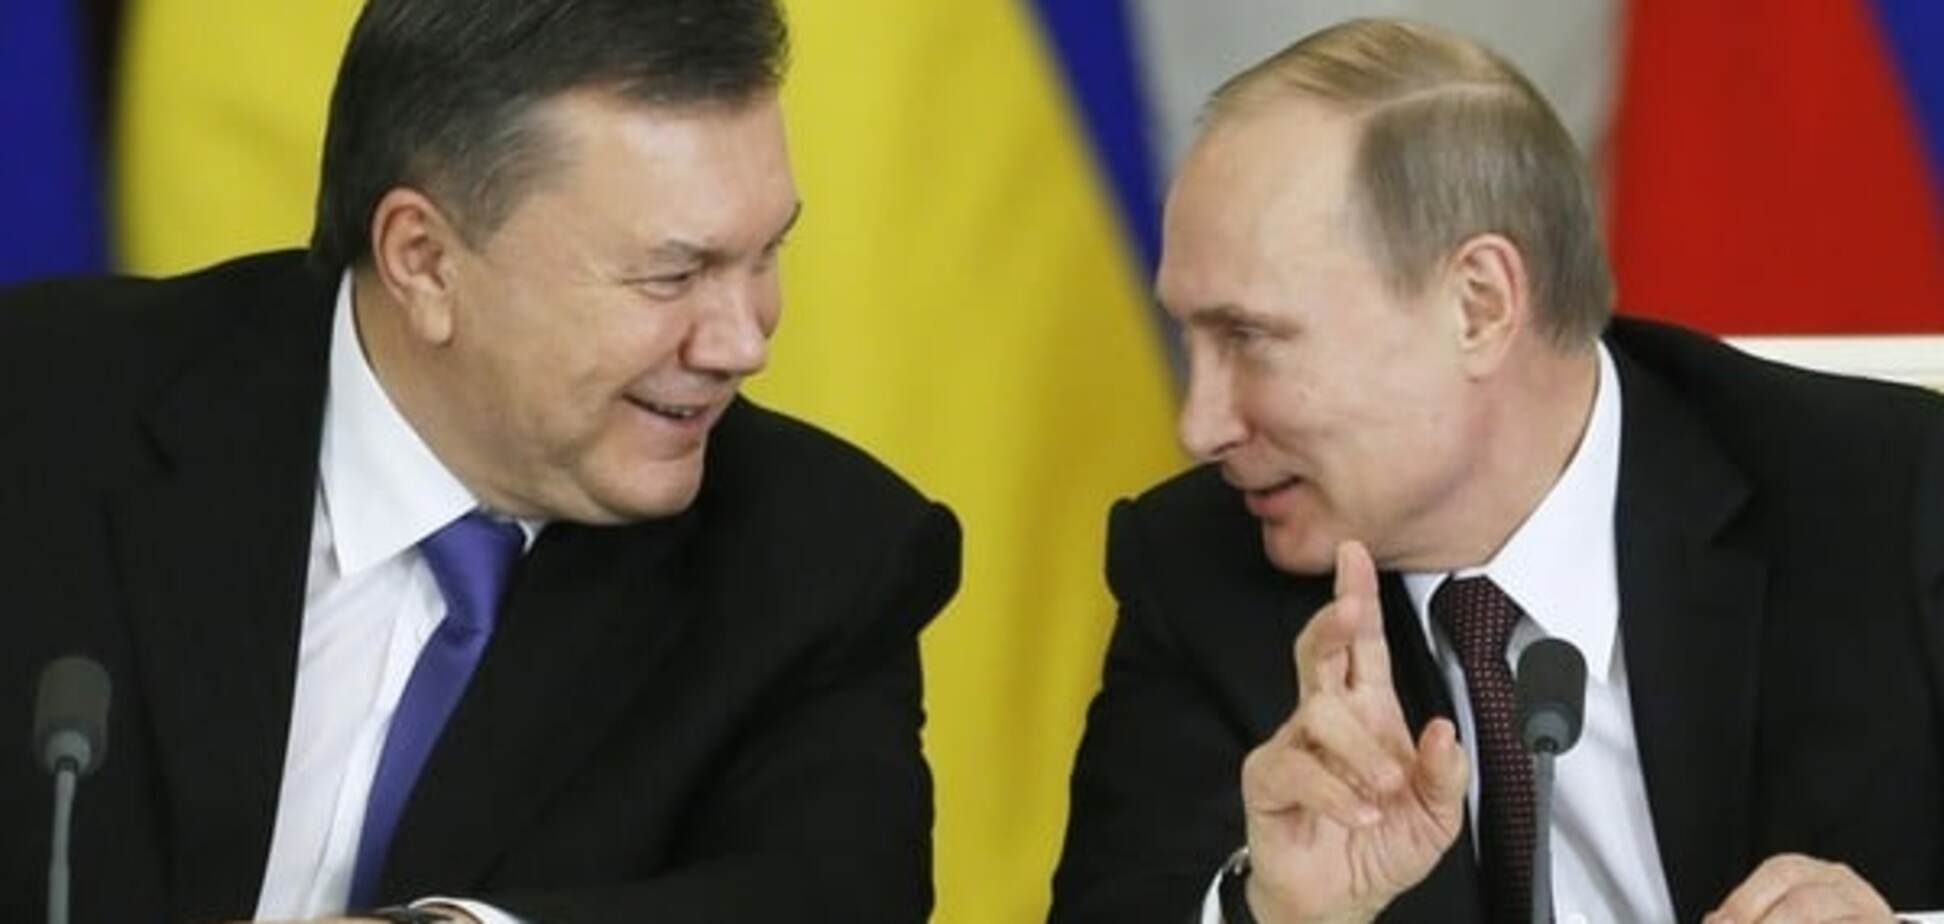 Козир в рукаві: експерт поділився прогнозом про 'борг Януковича'